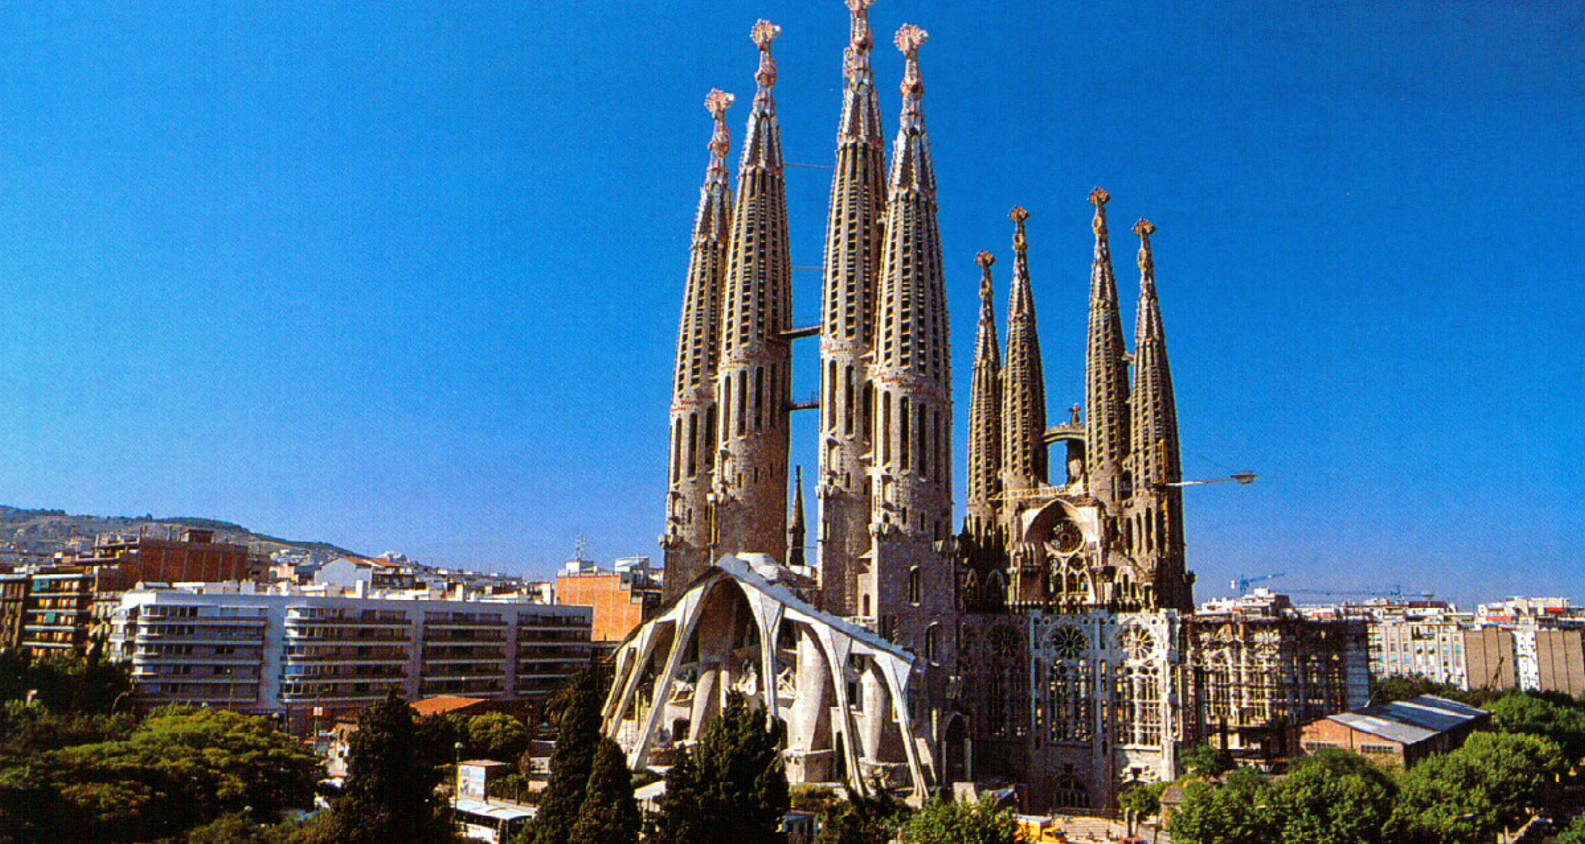 La Sagrada Familia. Source: Barcelona Home